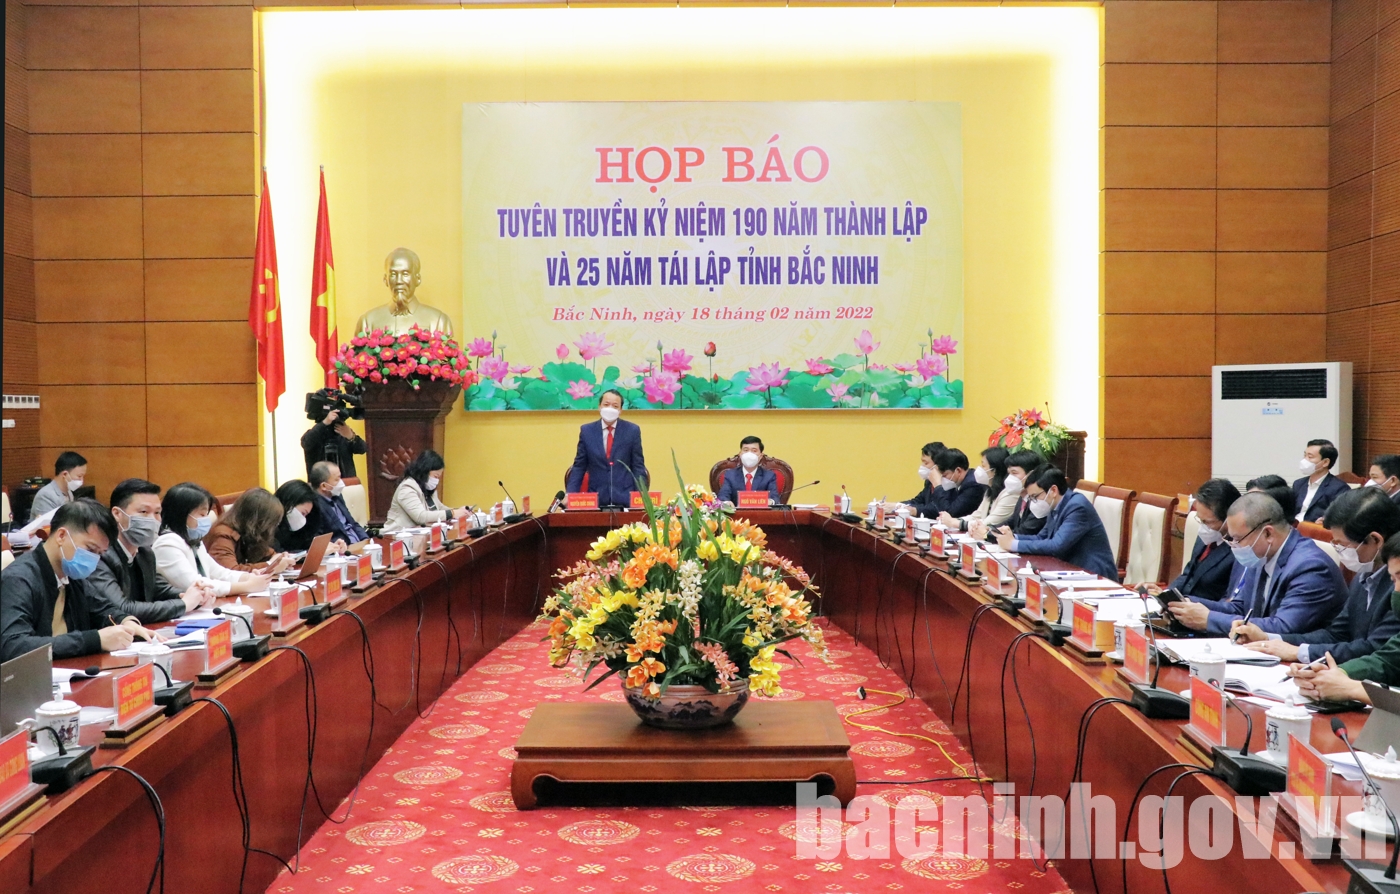 Họp báo tuyên truyền kỷ niệm 190 năm thành lập và 25 năm tái lập tỉnh Bắc Ninh